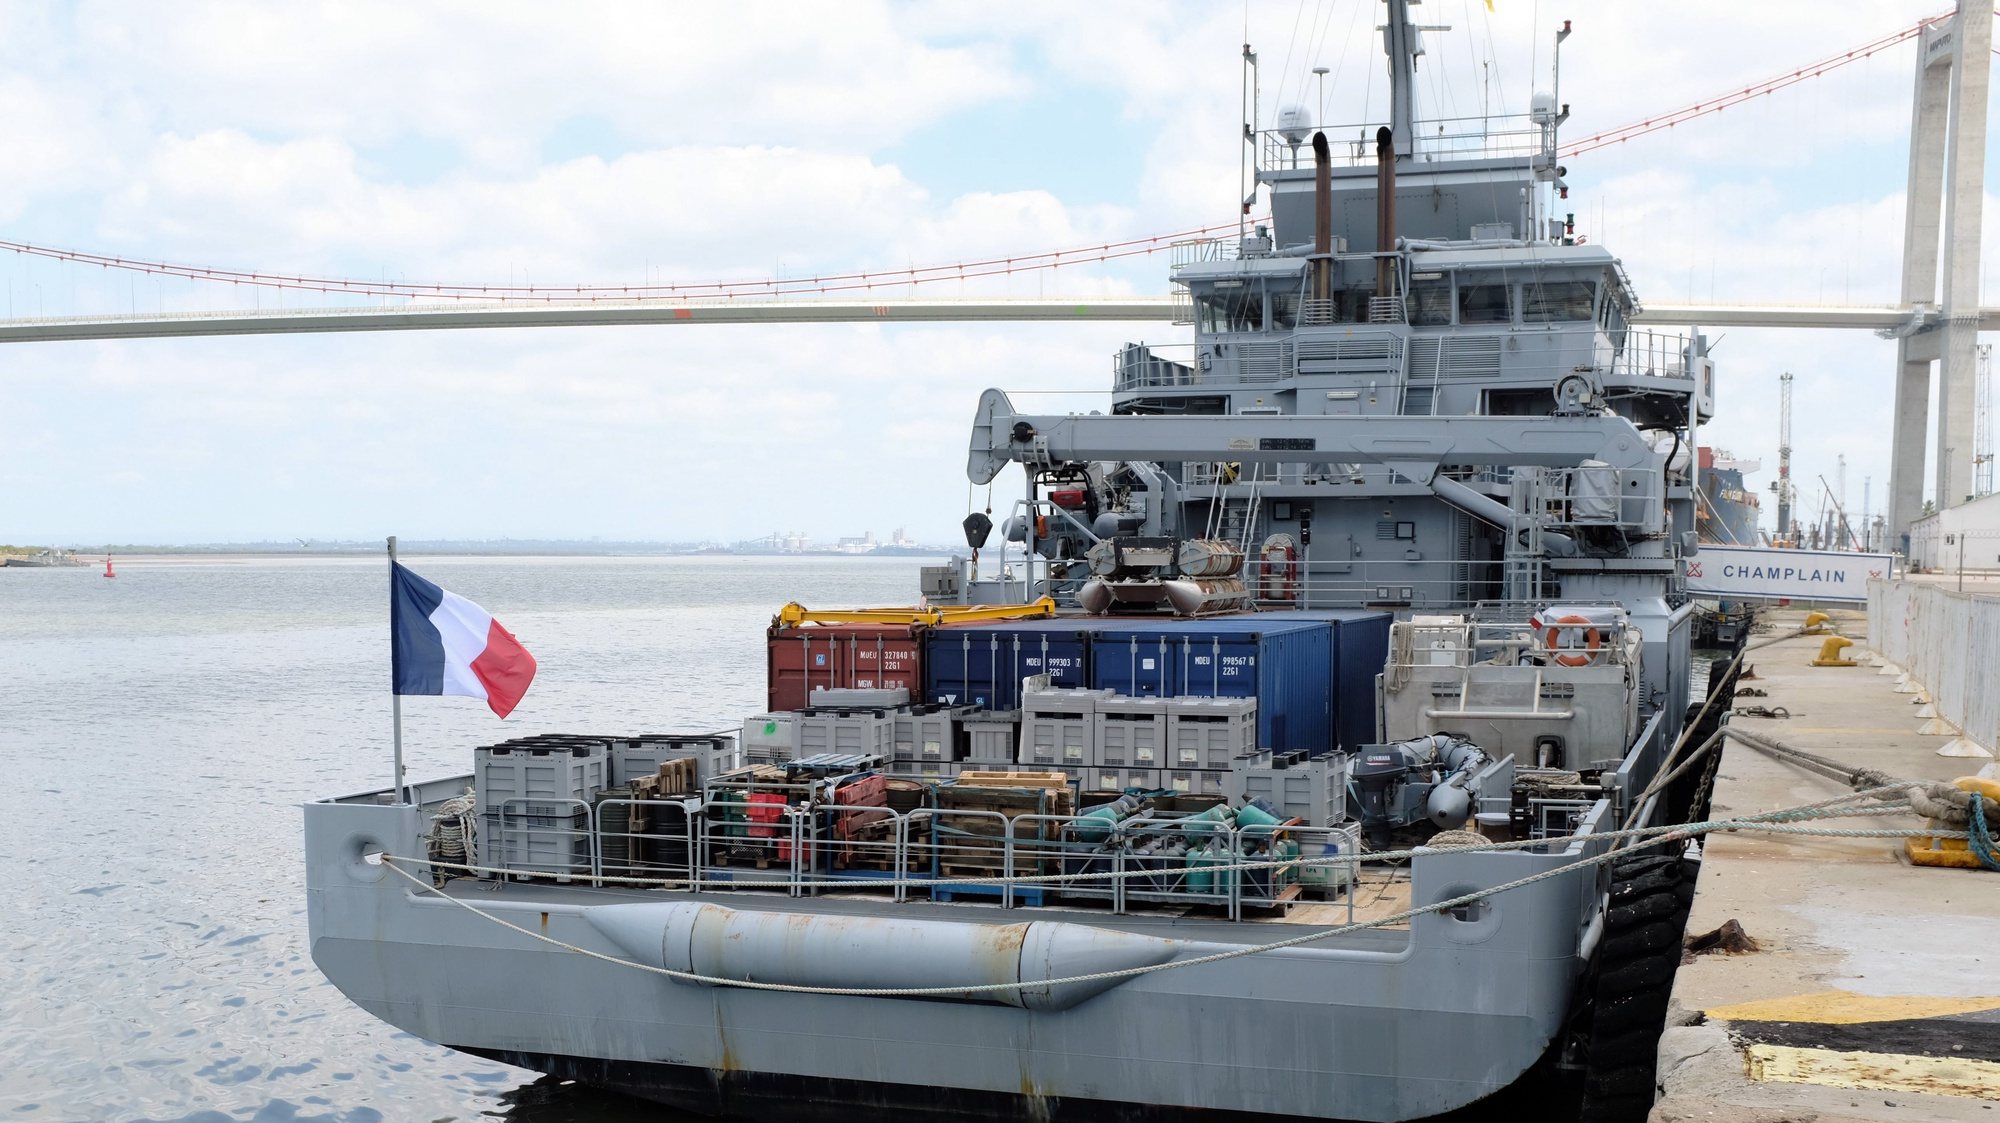 O navio militar francês Champlain, atracado no porto de Maputo, 22 de fevereiro de 2020. ANTÓNIO SILVA/LUSA